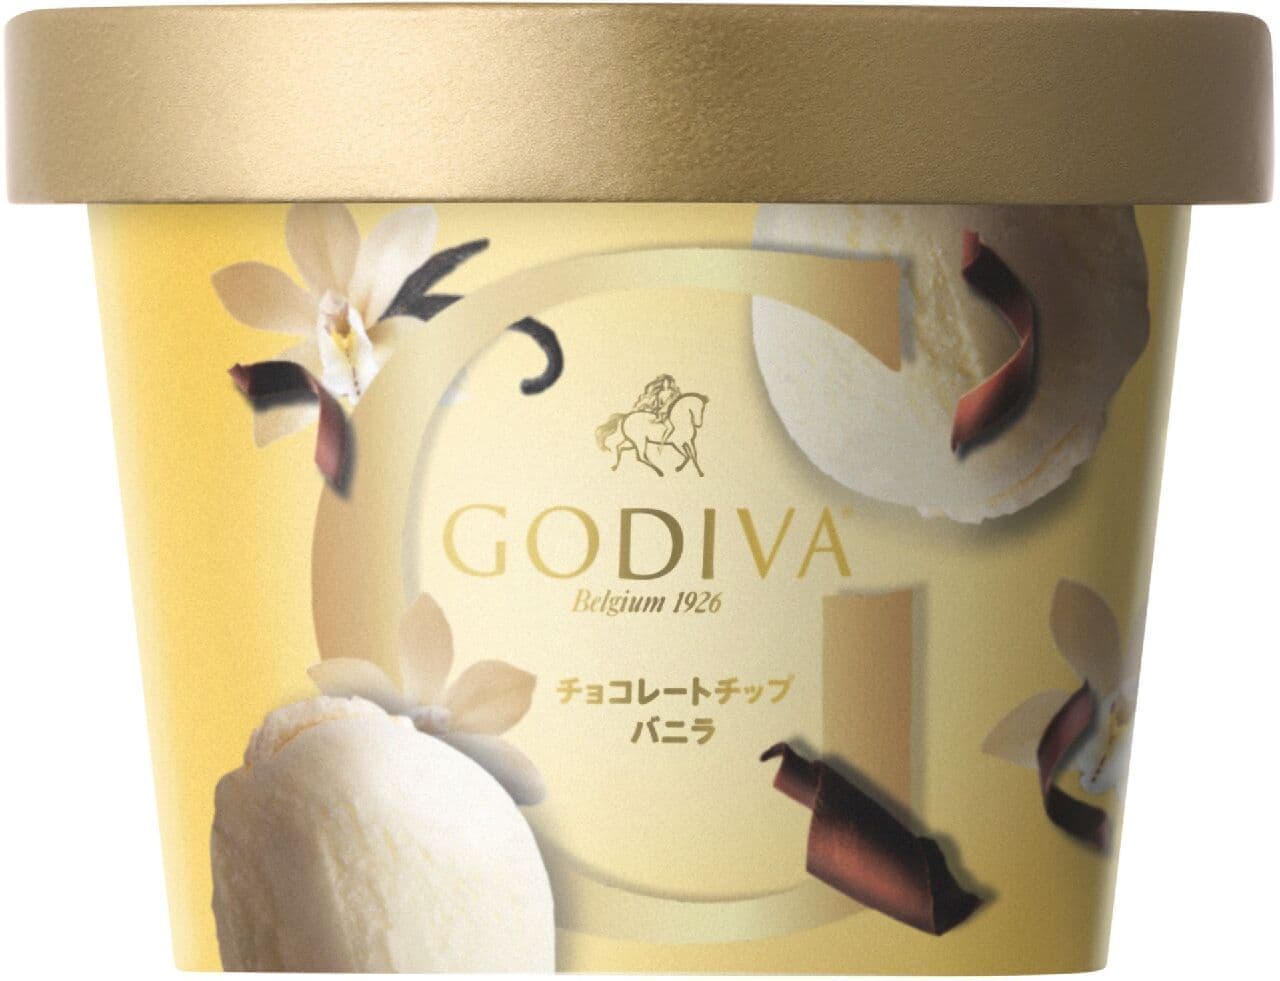 ゴディバのカップアイス「チョコレートチップ バニラ」